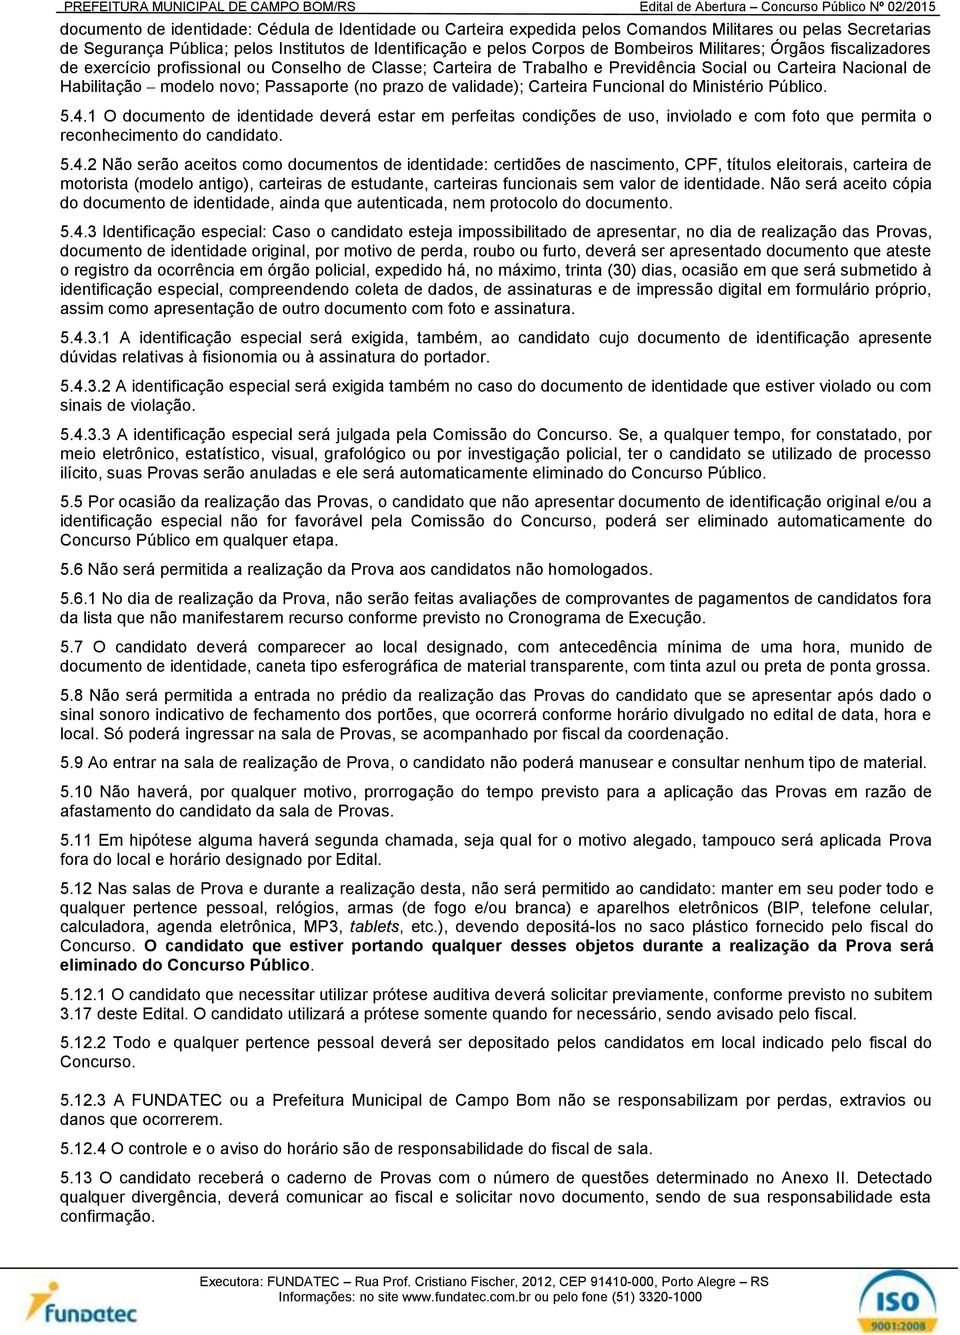 validade); Carteira Funcional do Ministério Público. 5.4.